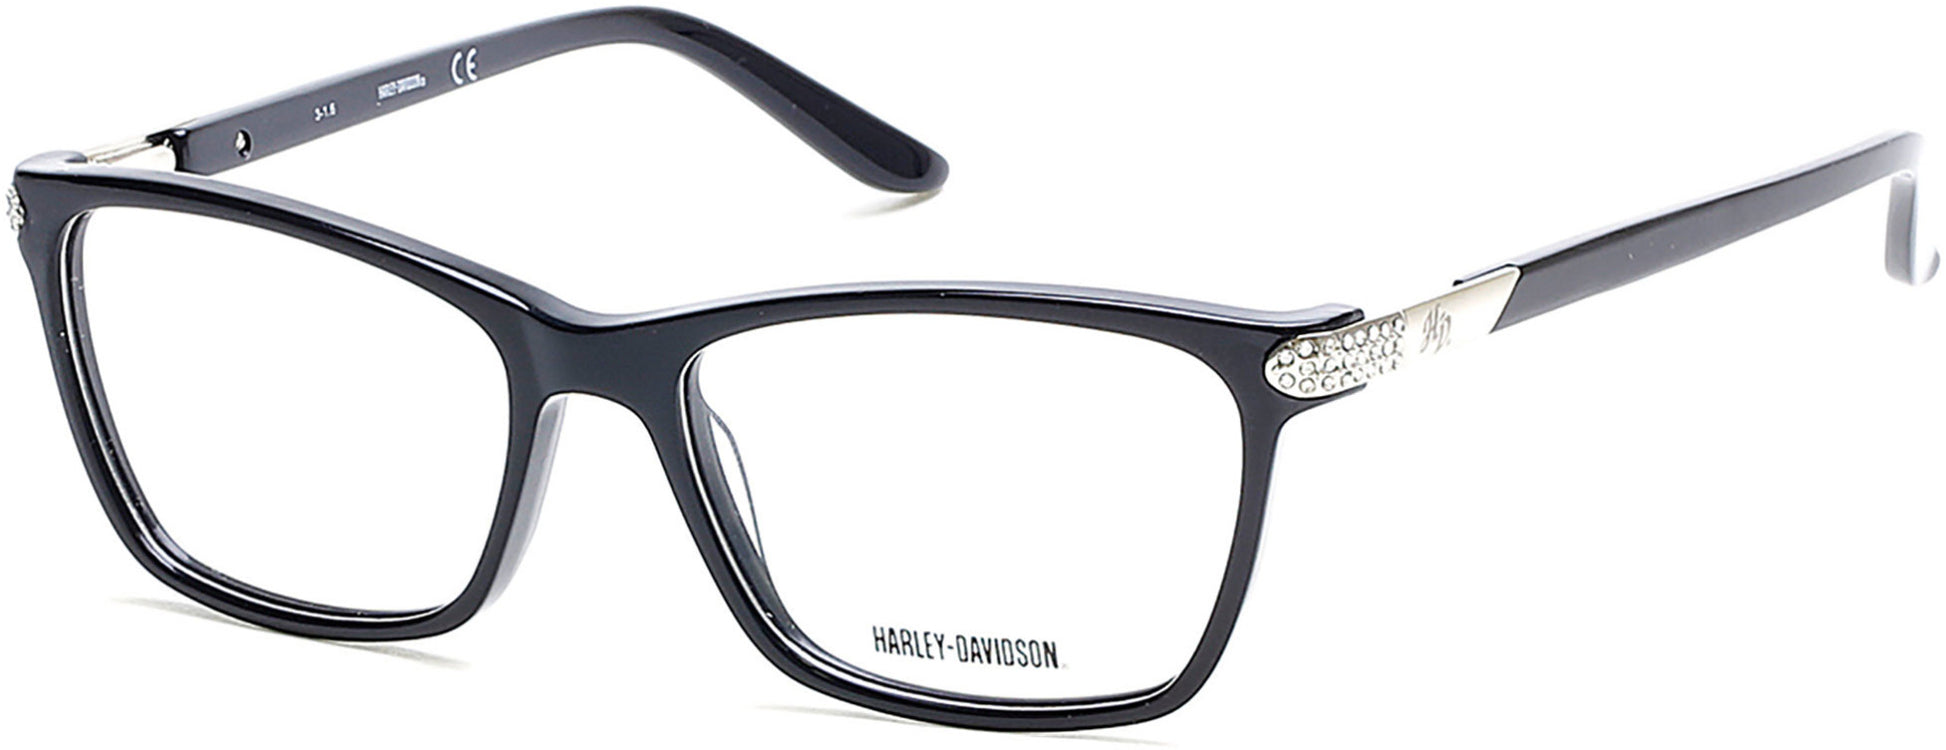 Harley-Davidson HD0531 Eyeglasses 001-001 - Shiny Black